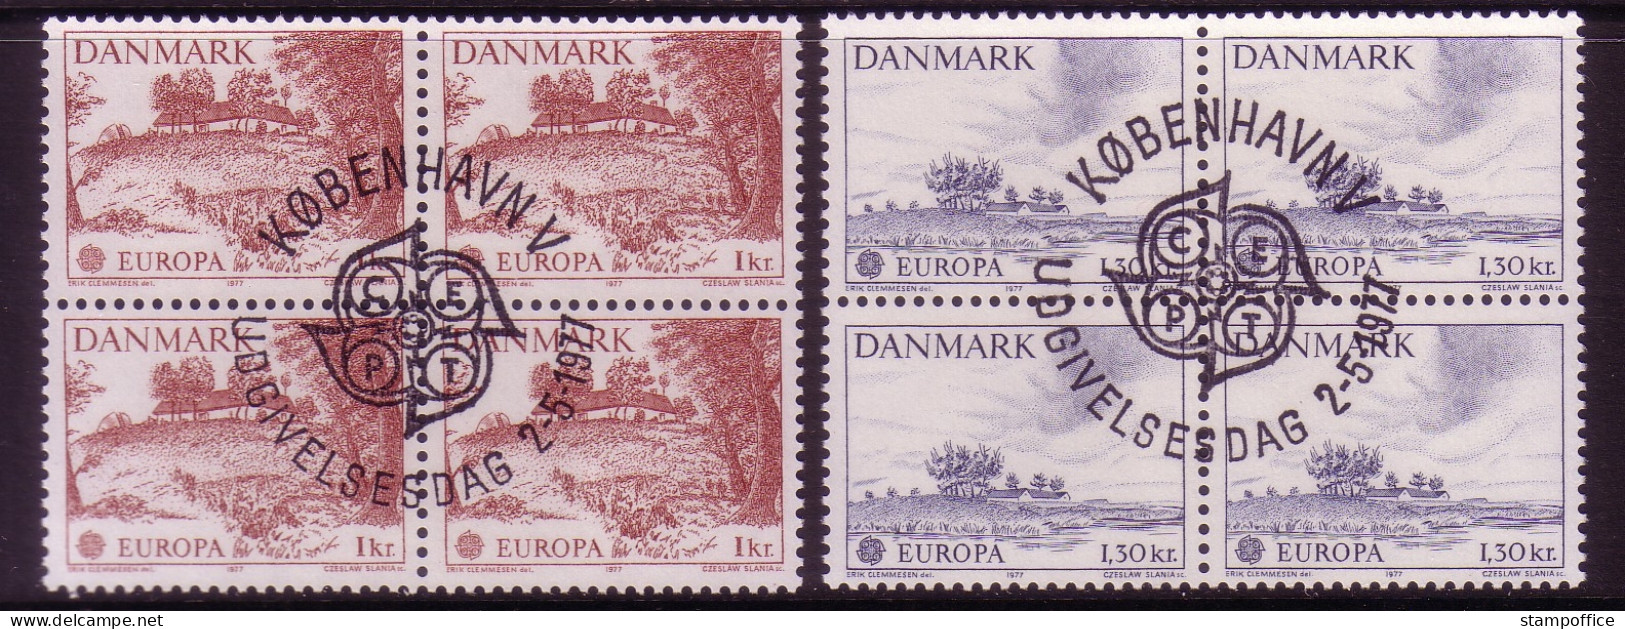 DÄNEMARK MI-NR. 639-640 O 4er BLOCK EUROPA 1977 - LANDSCHAFTEN - 1977